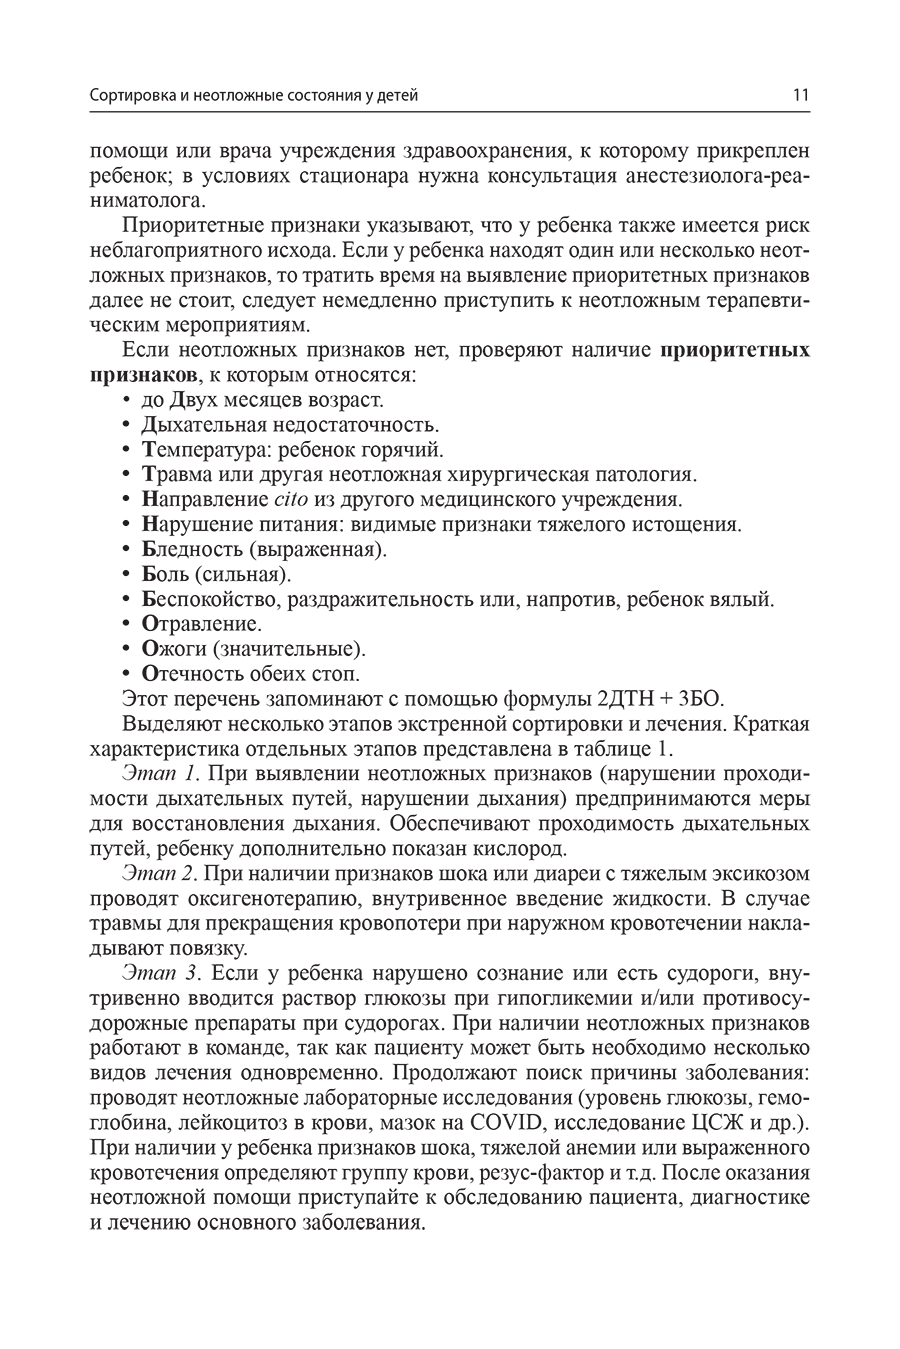 Пример страницы из книги "Неотложная помощь в педиатрической практике" - Григорьев К. И.